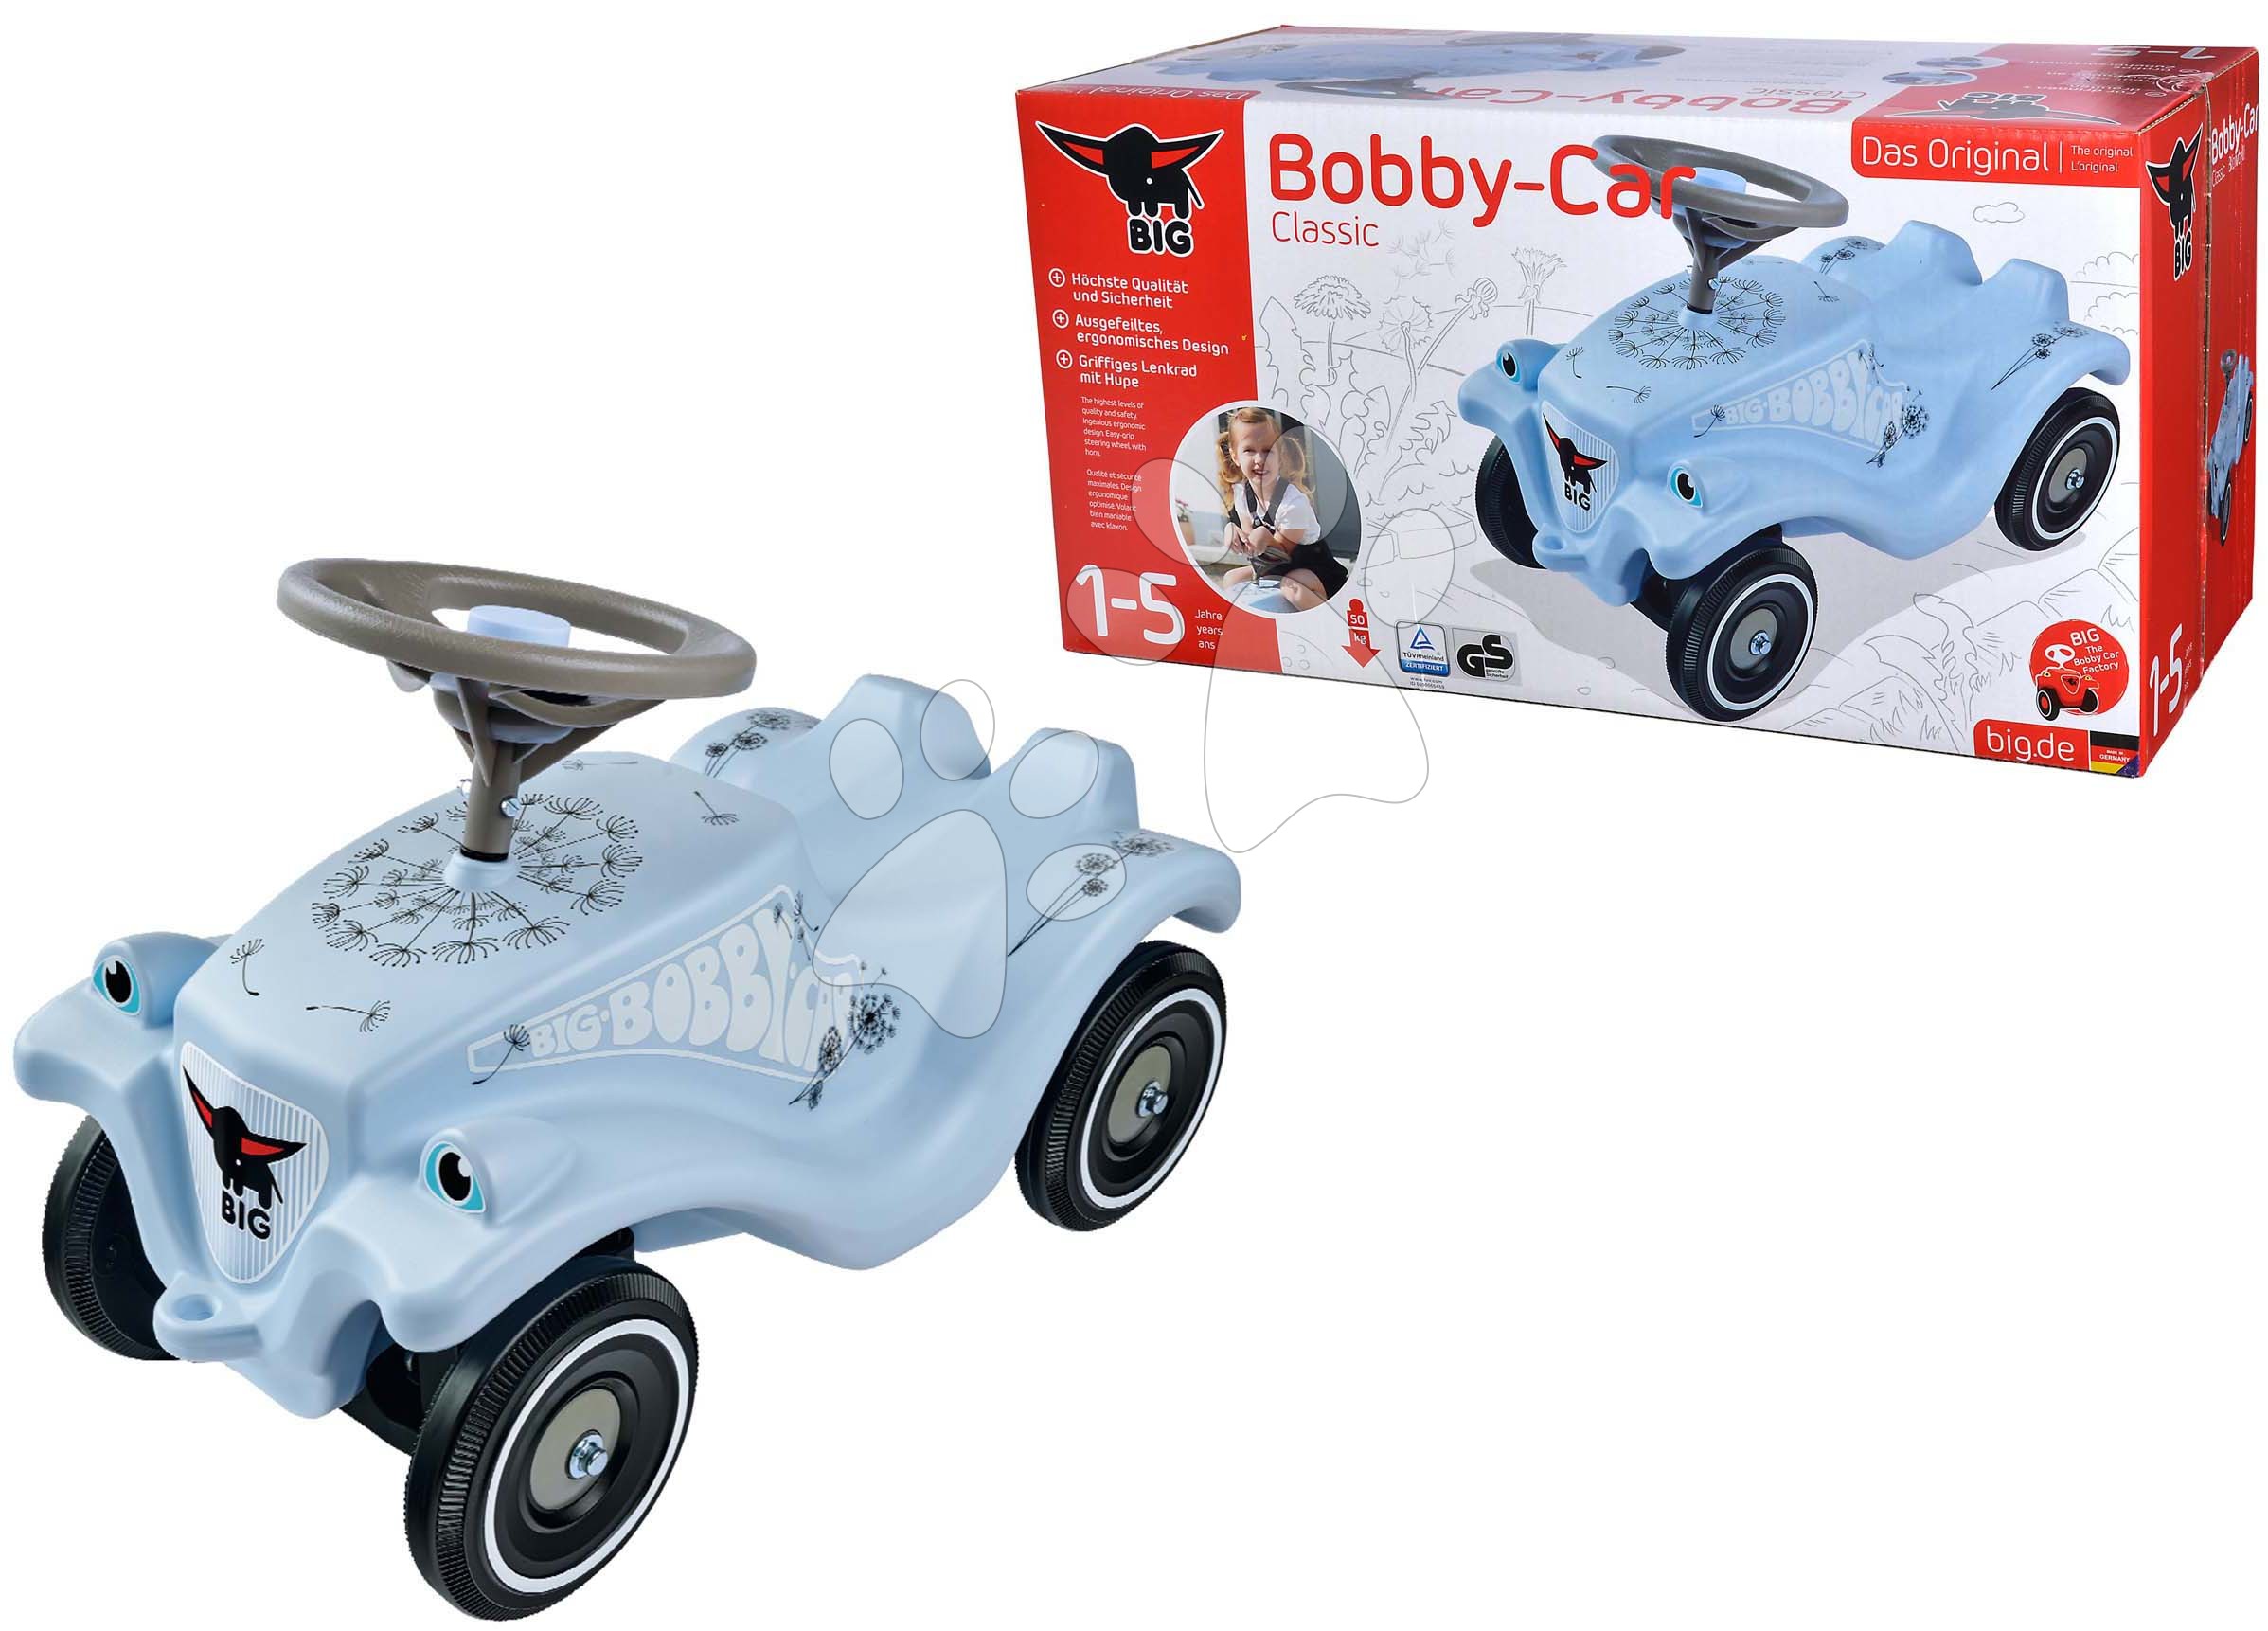 BIG Bobby Car Classic 4 Wheeled Ride-On Car - Flower 800056110 